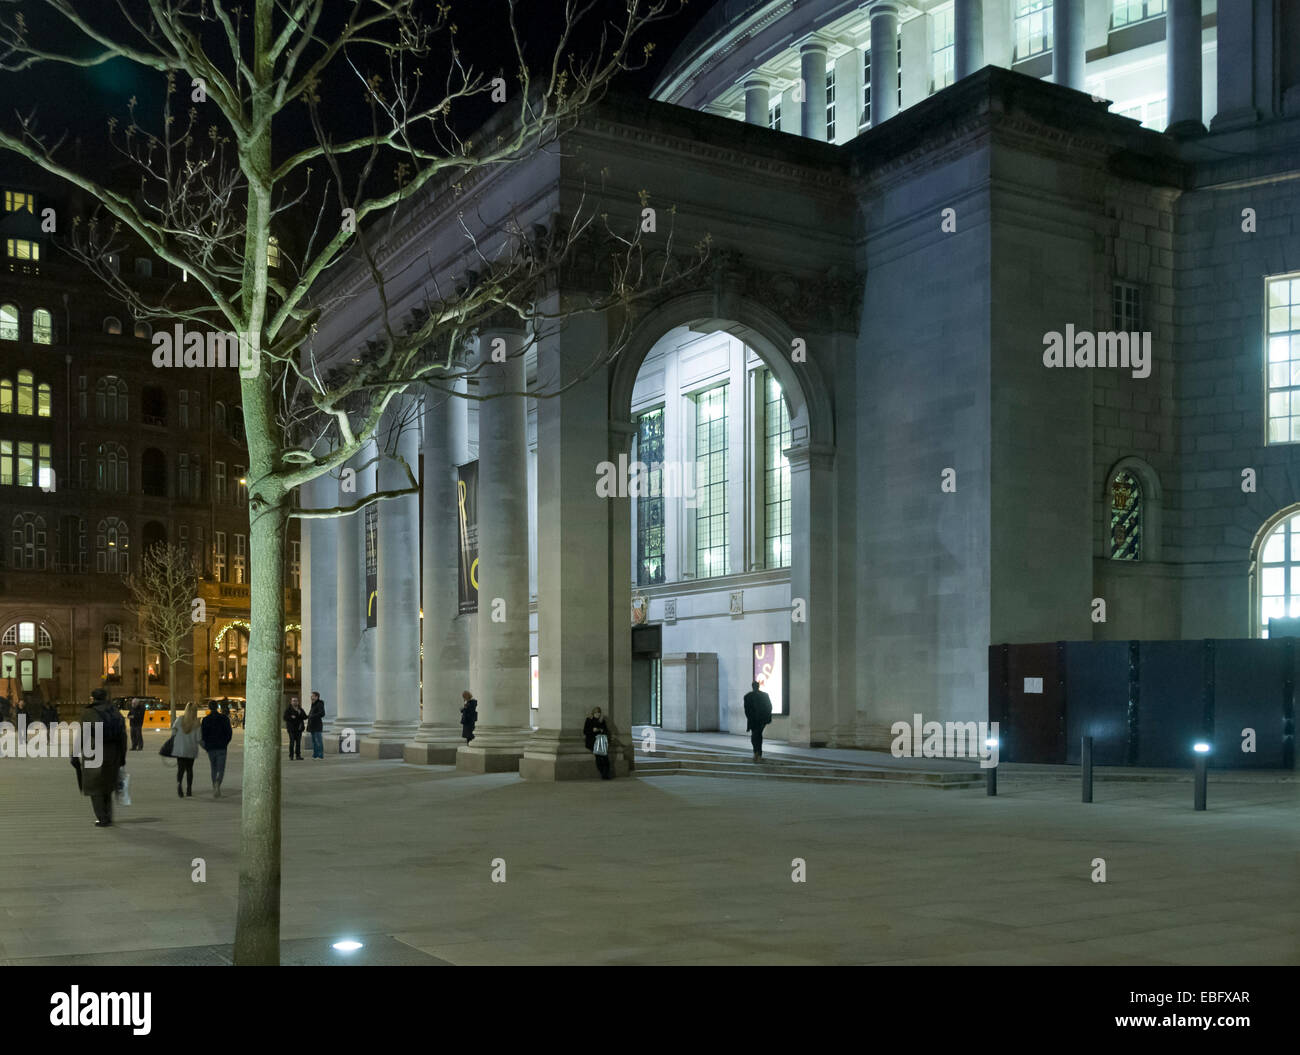 Biblioteca centrale di Manchester ingresso portico di notte, Piazza San Pietro, Manchester, Inghilterra, Regno Unito Foto Stock